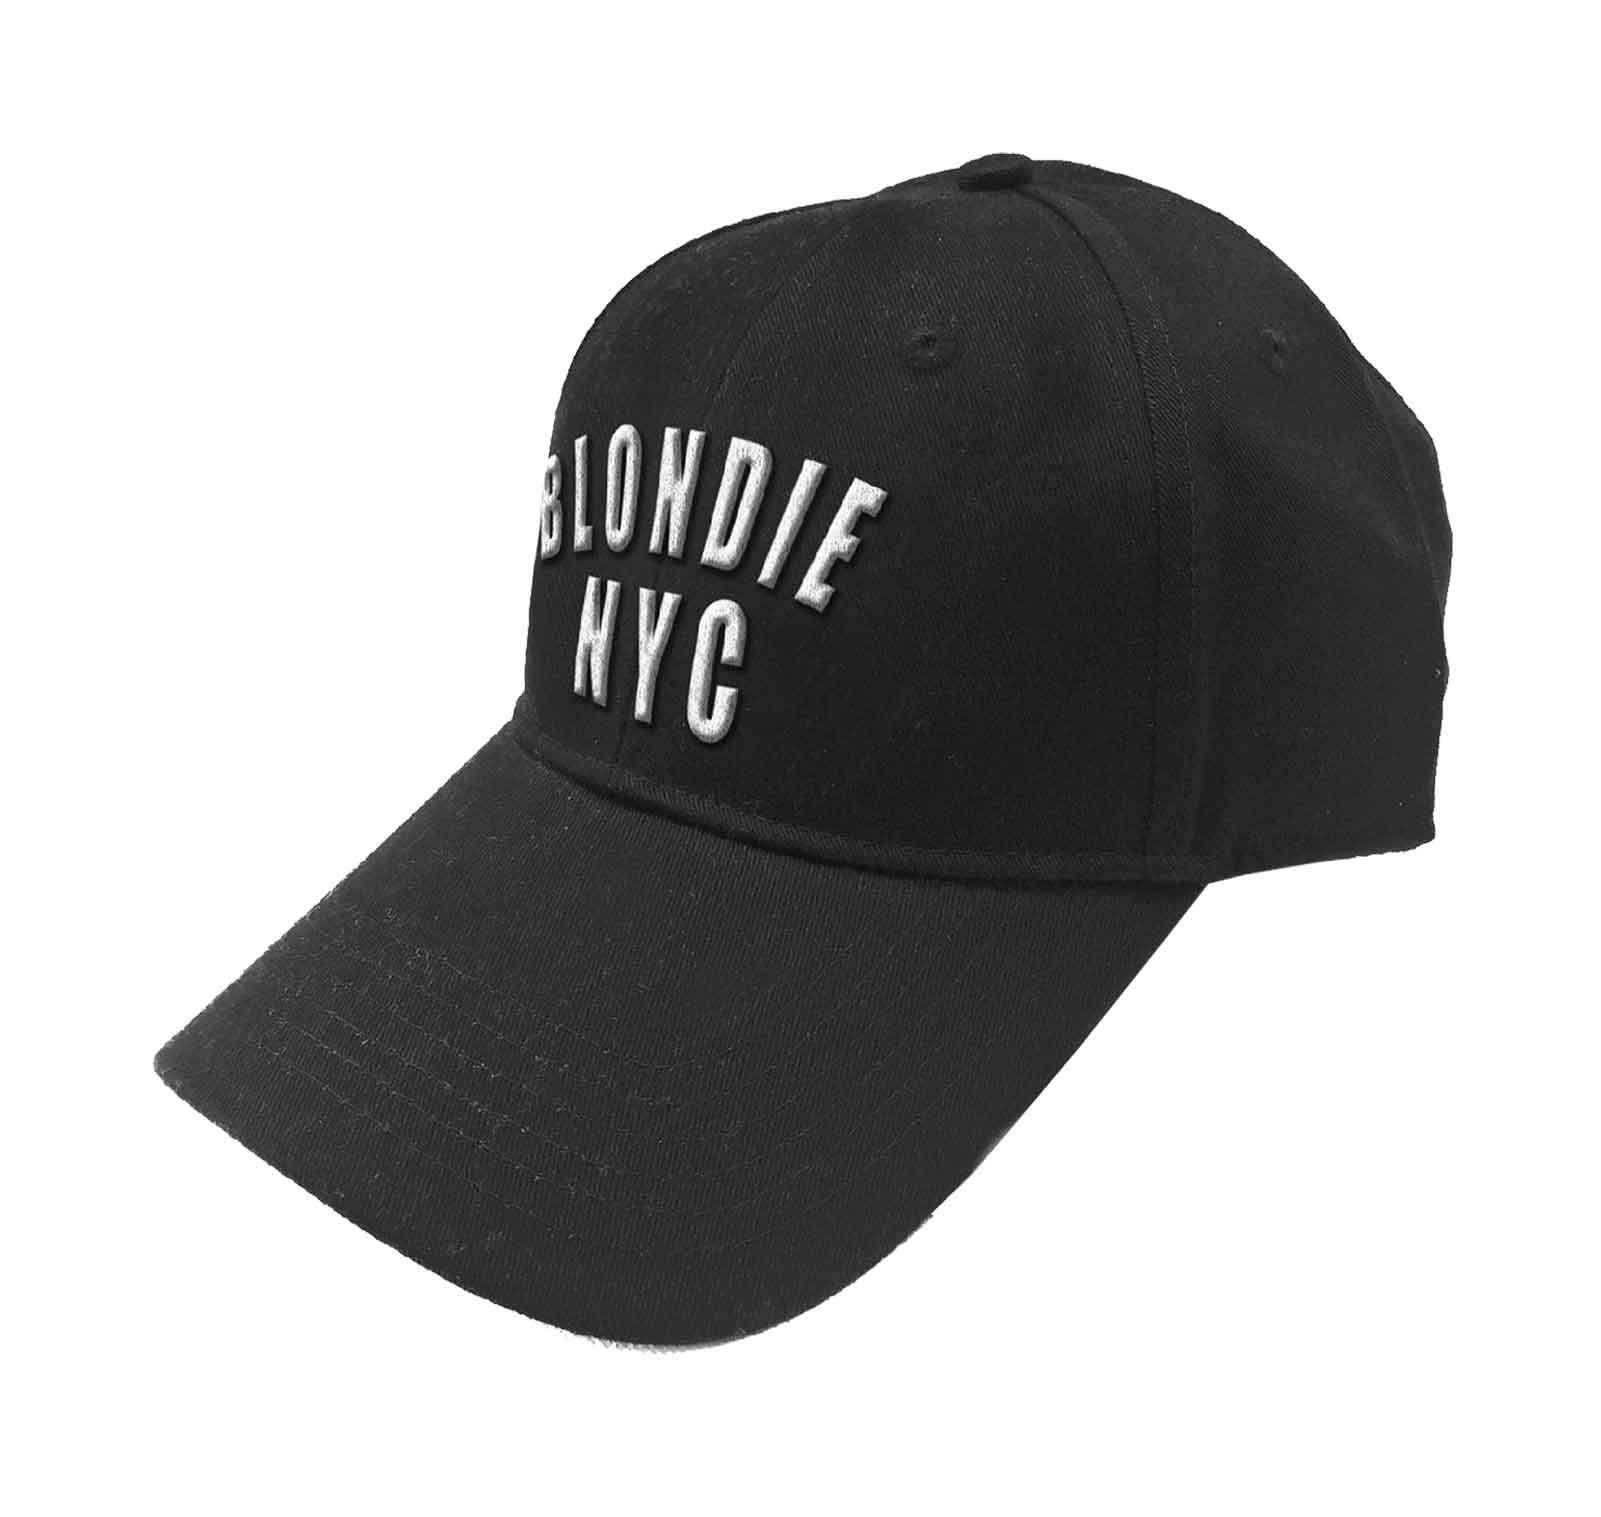 Бейсбольная кепка с логотипом NYC Band и ремешком на спине Blondie, черный